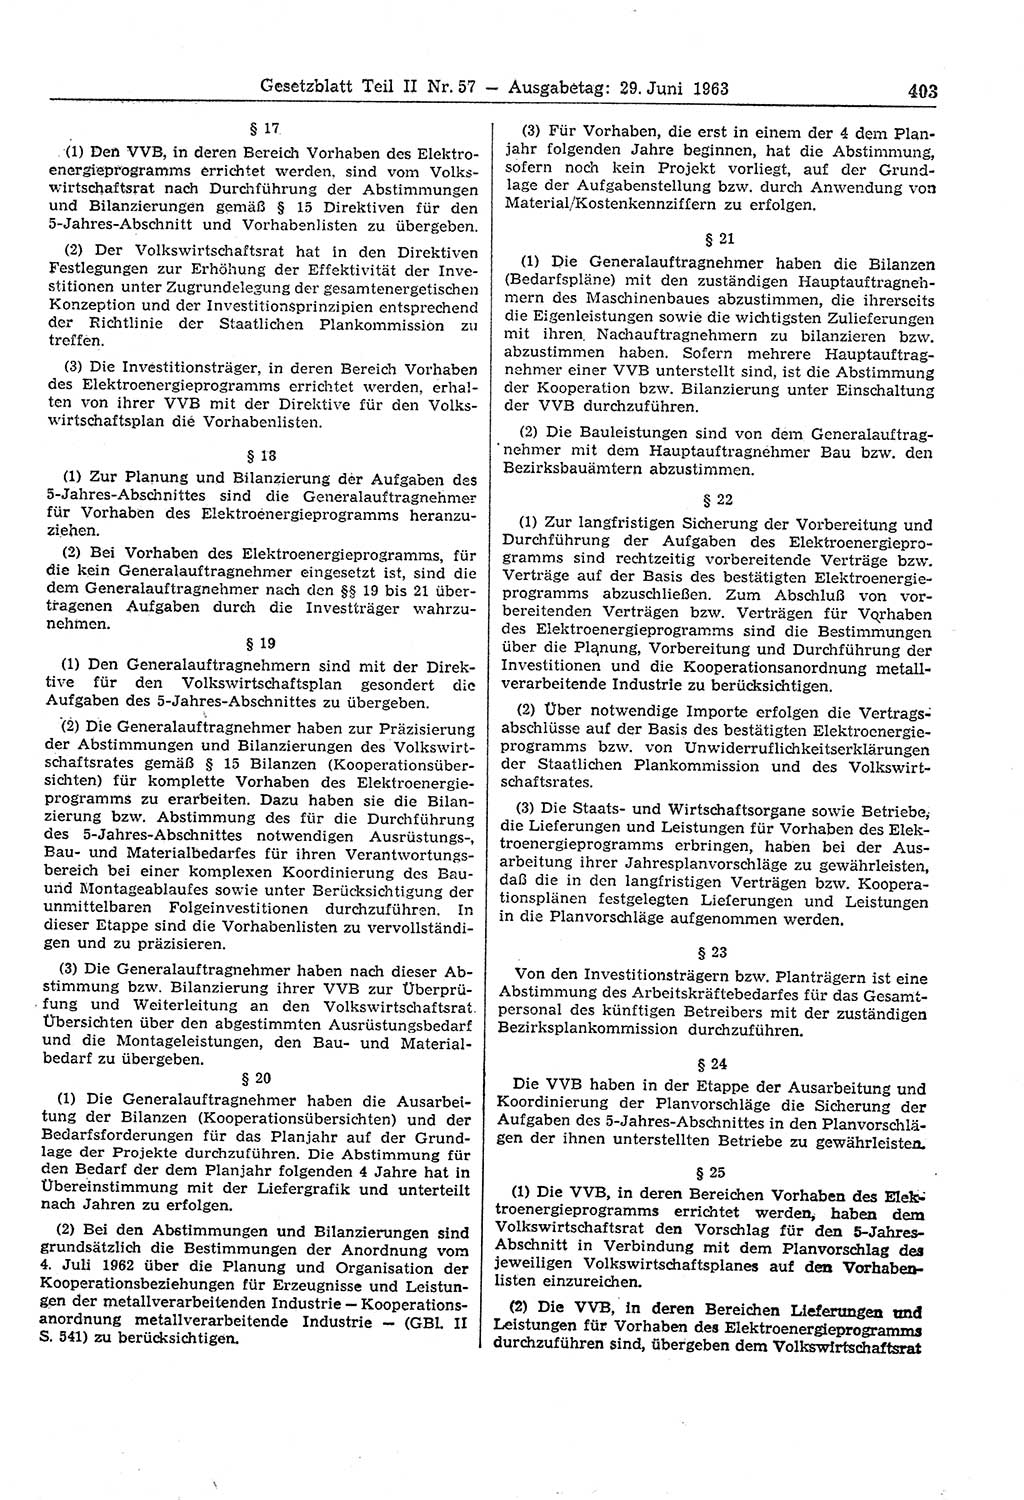 Gesetzblatt (GBl.) der Deutschen Demokratischen Republik (DDR) Teil ⅠⅠ 1963, Seite 403 (GBl. DDR ⅠⅠ 1963, S. 403)